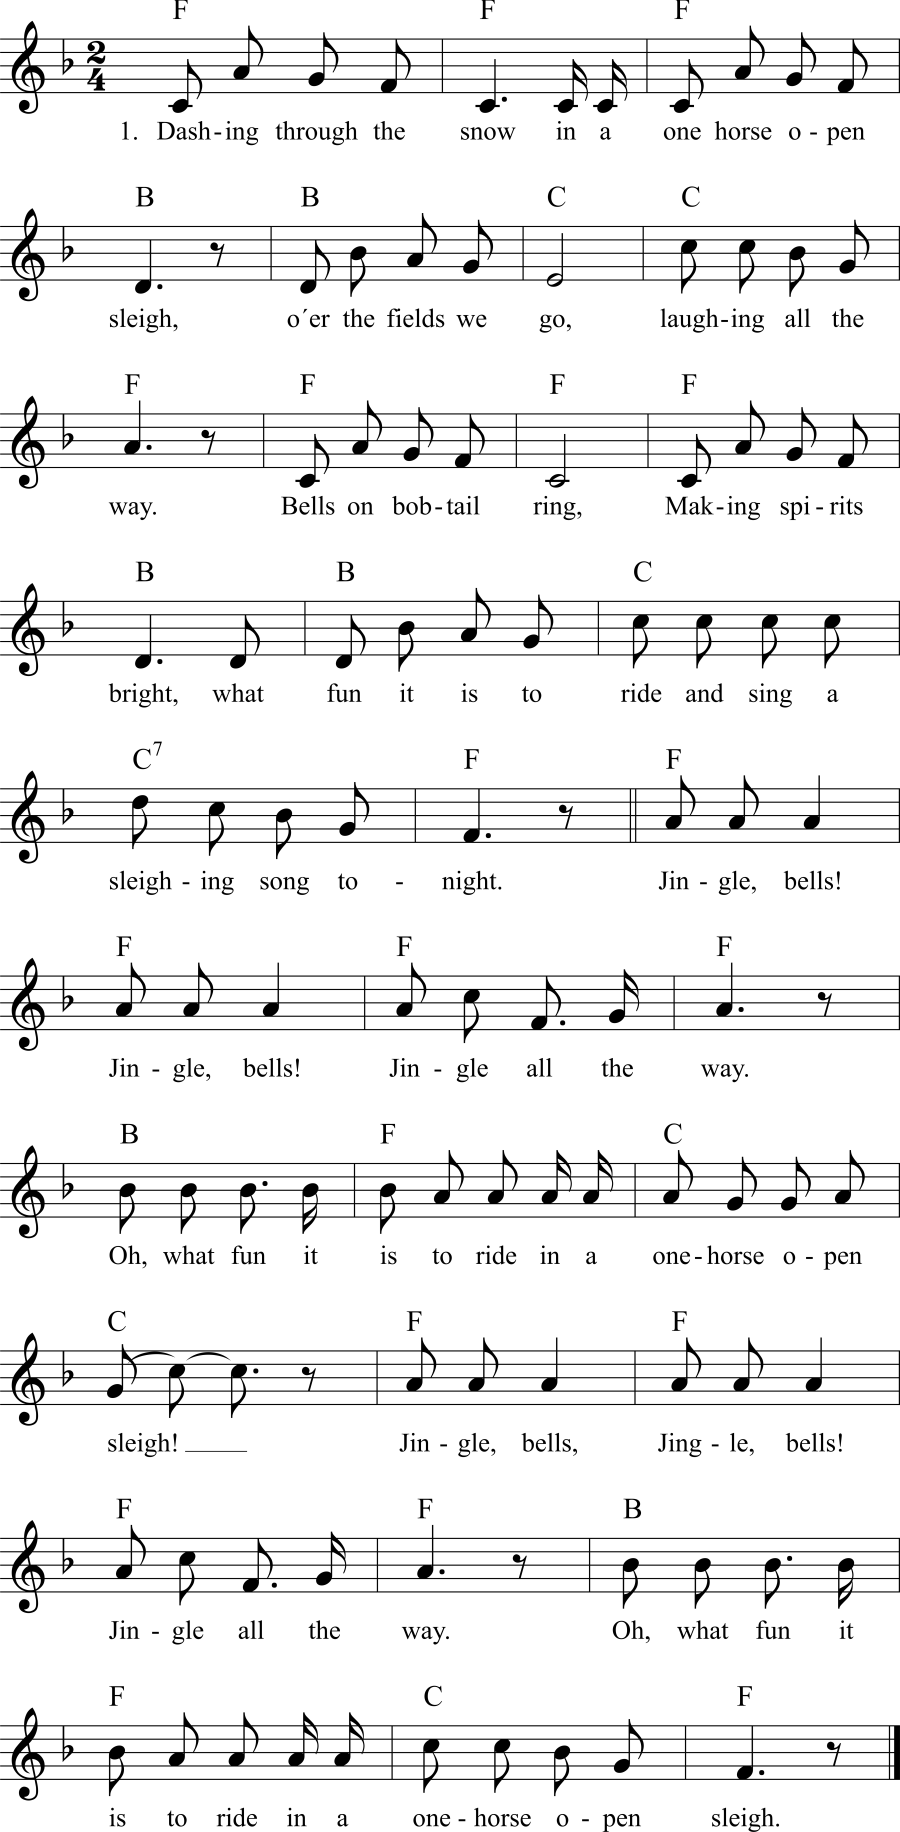 Musiknoten zum Lied - Jingle Bells